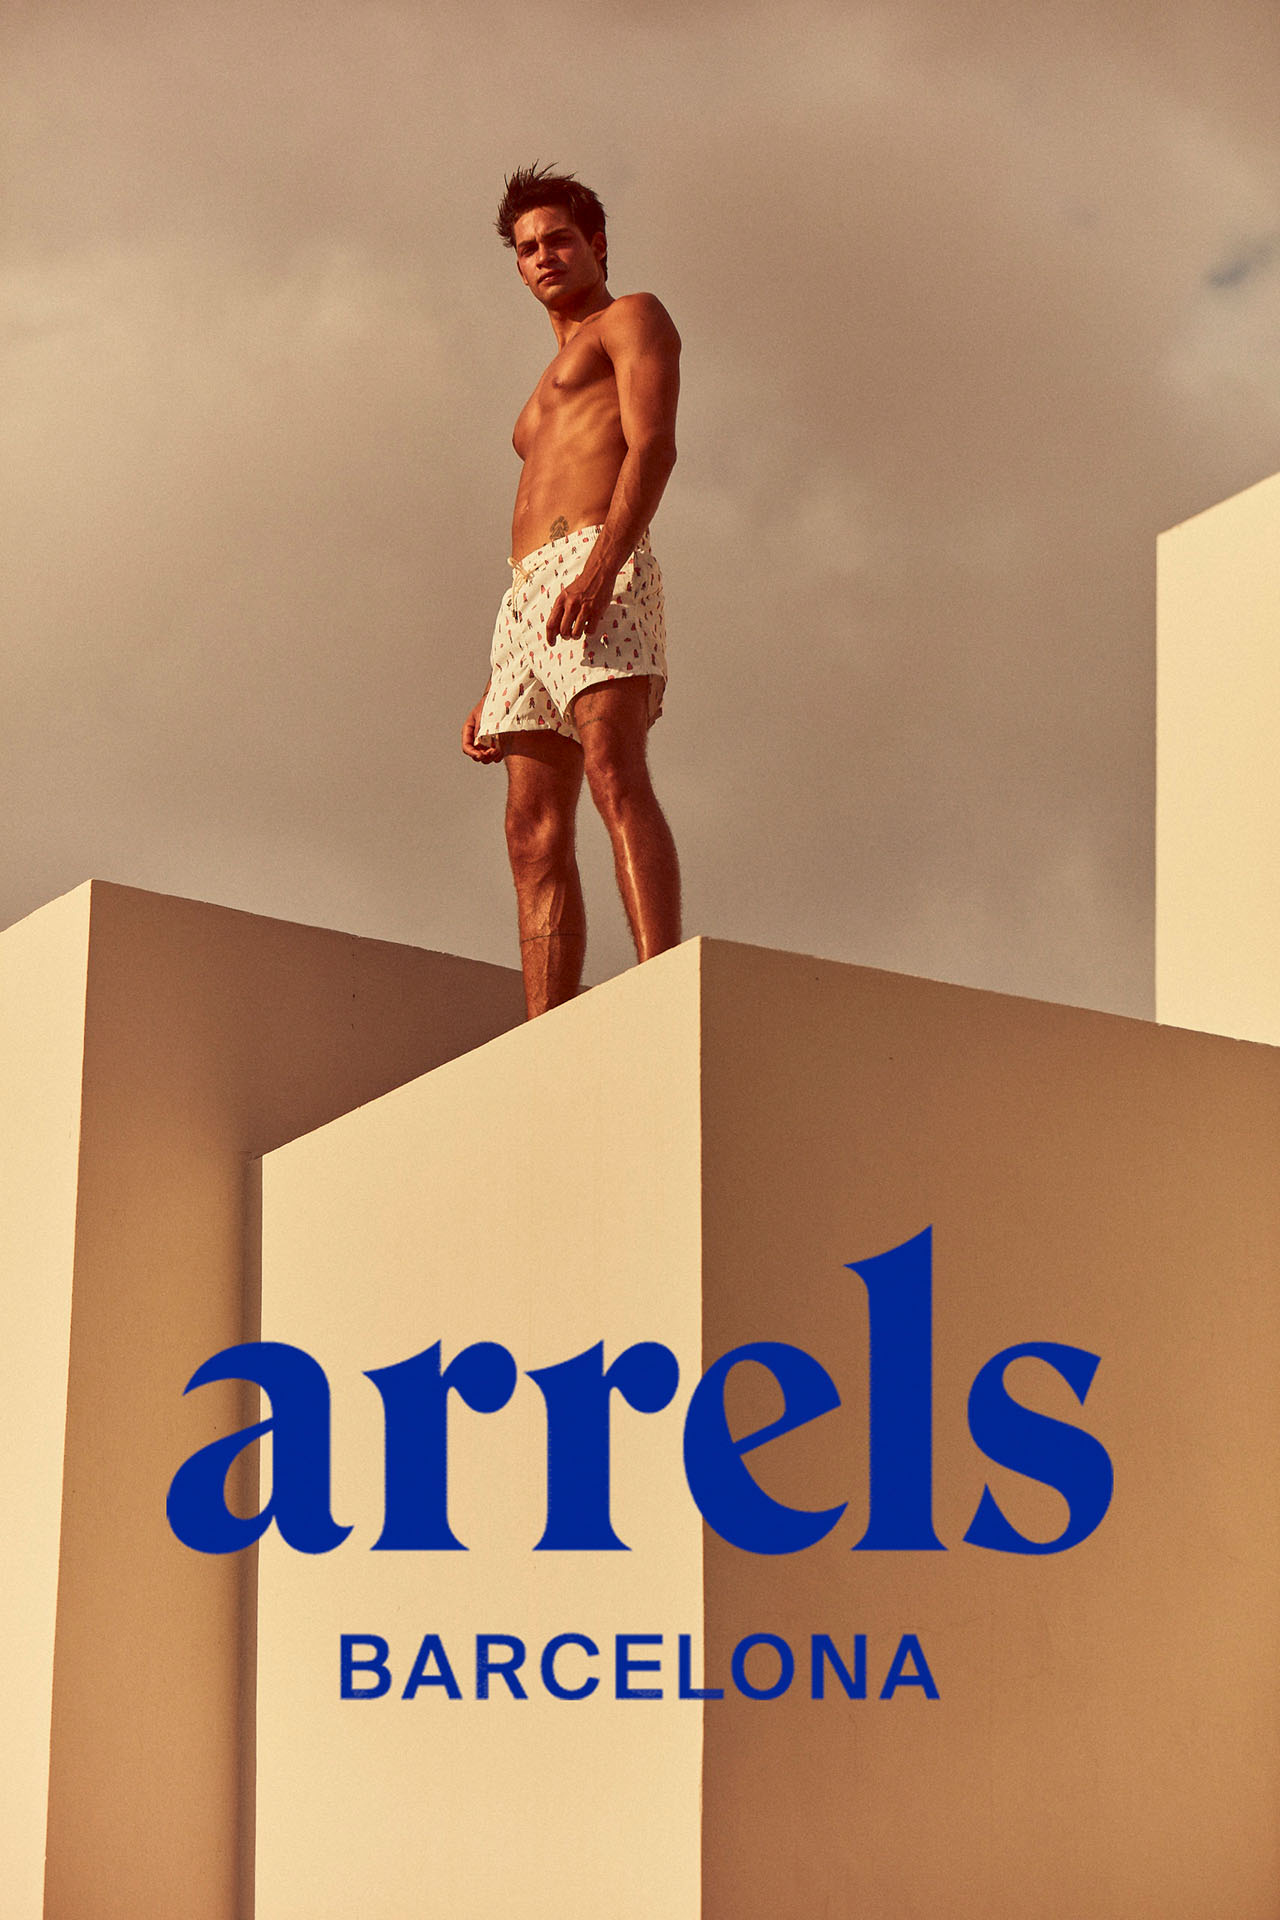 Campaña publicitaria realizada por la fotógrafa Alicia Aguilera junto a Enri Mür Studio para la marca Arrels Barcelona beachwear.